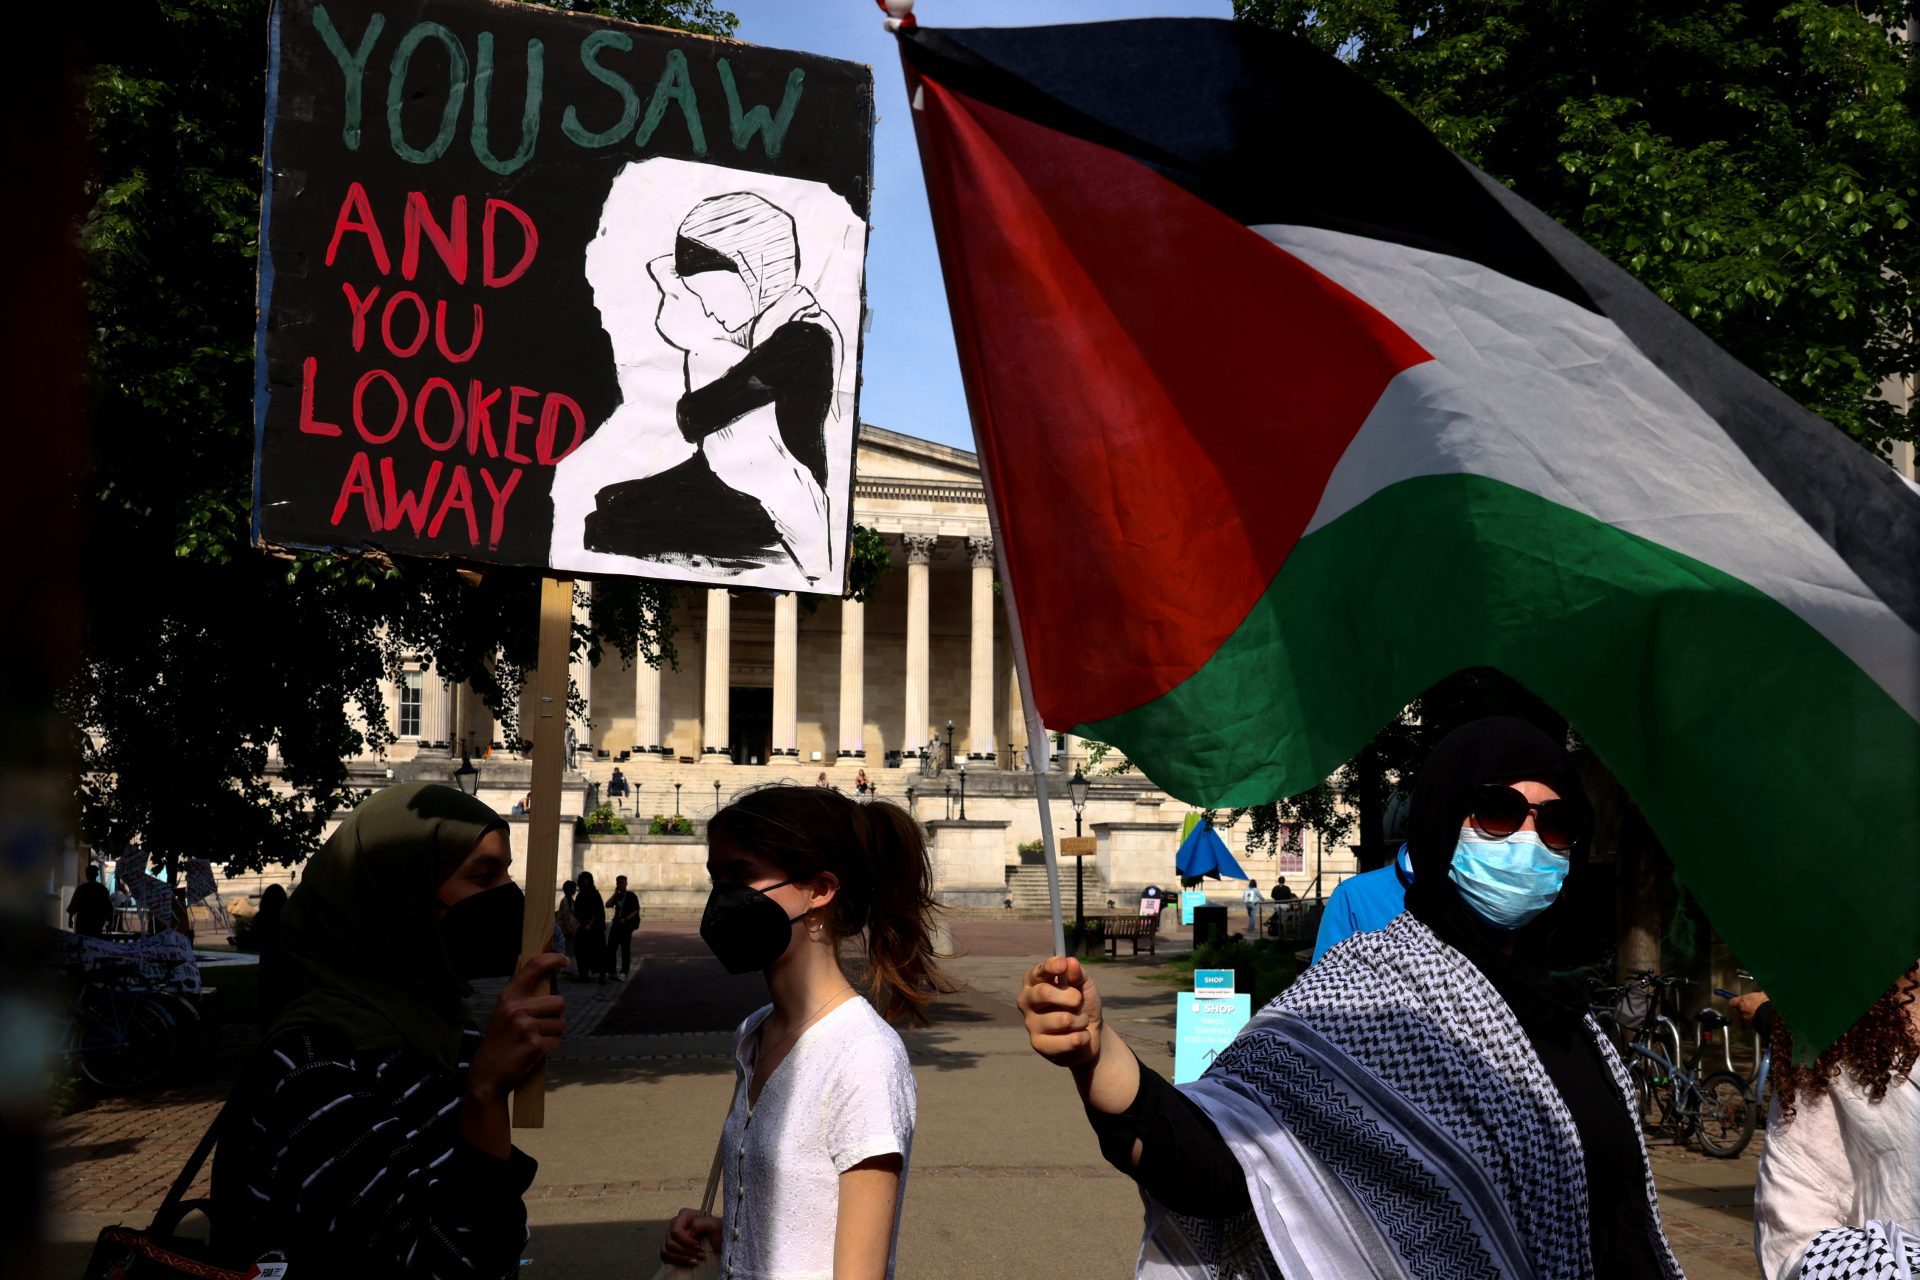 Les Britanniques soutiennent une trêve immédiate et un embargo sur les armes en Israël selon sondage